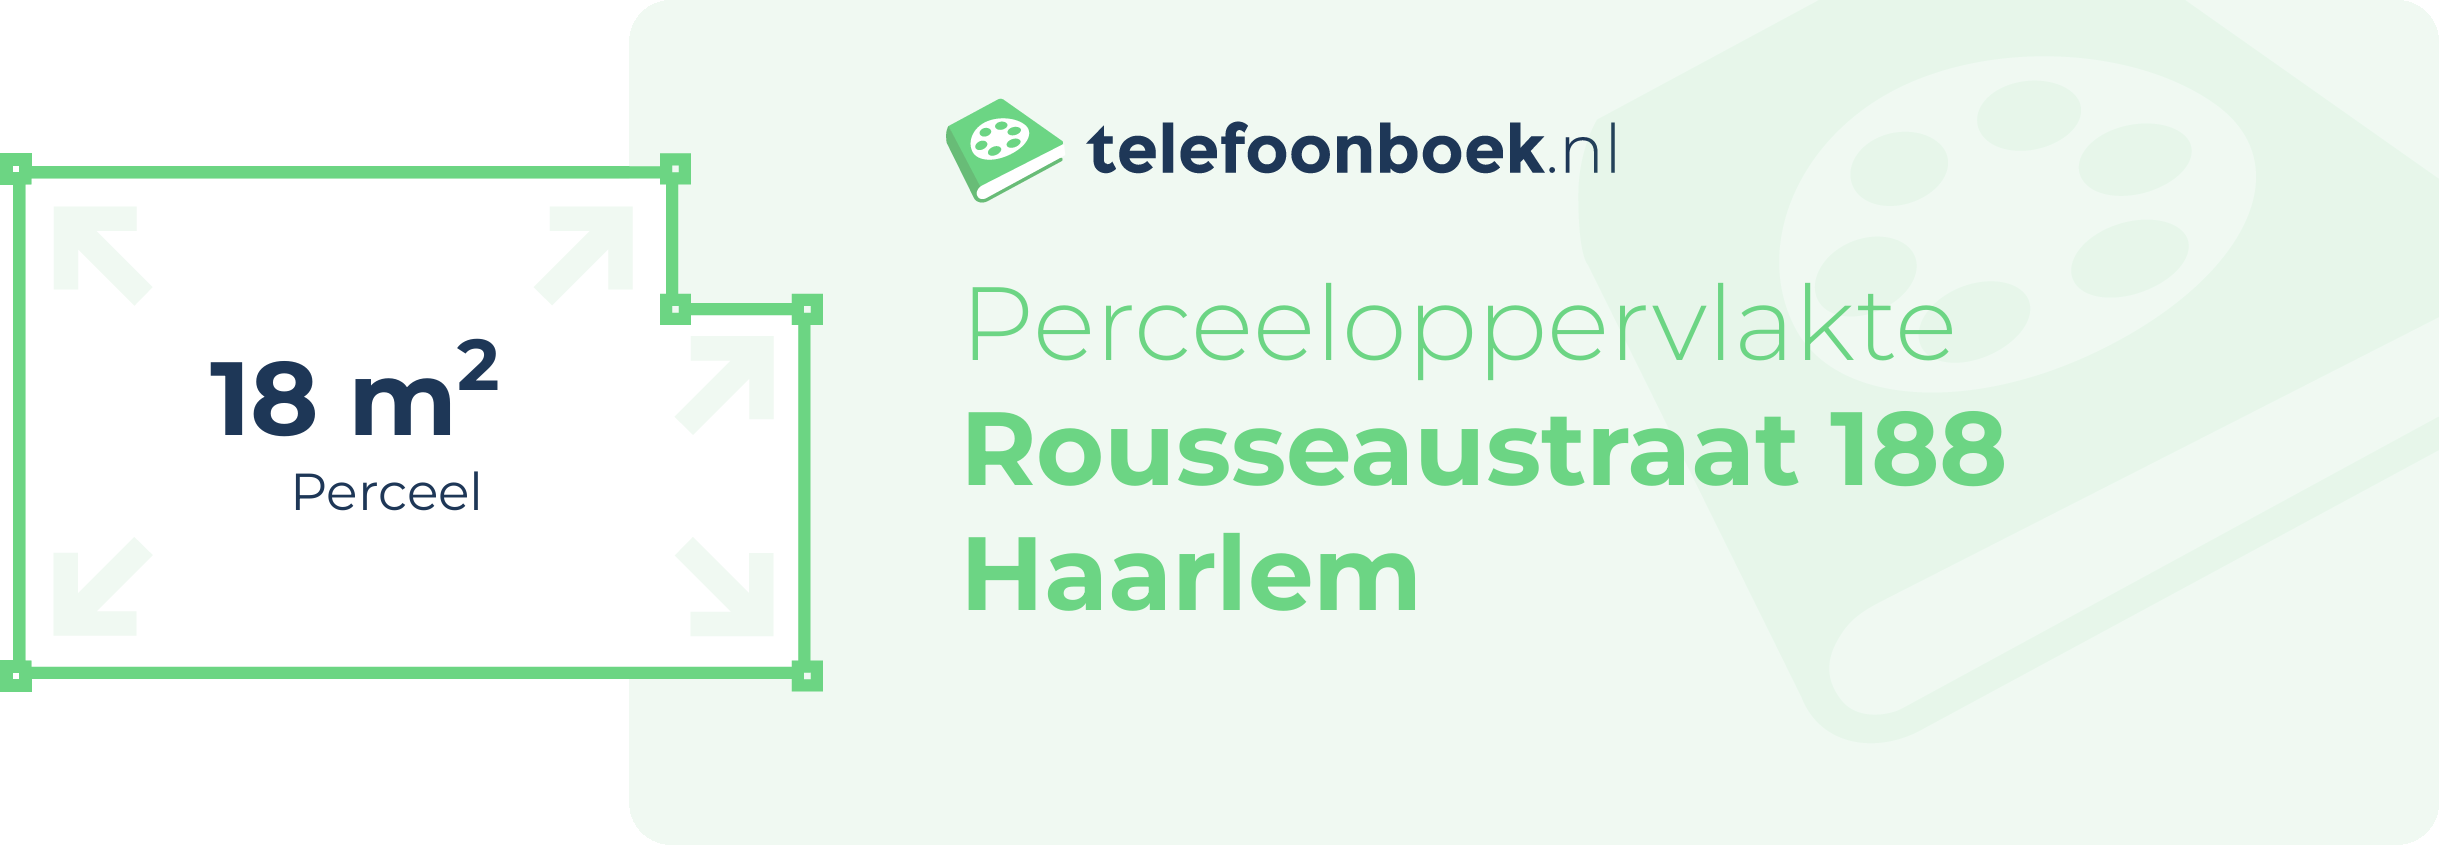 Perceeloppervlakte Rousseaustraat 188 Haarlem